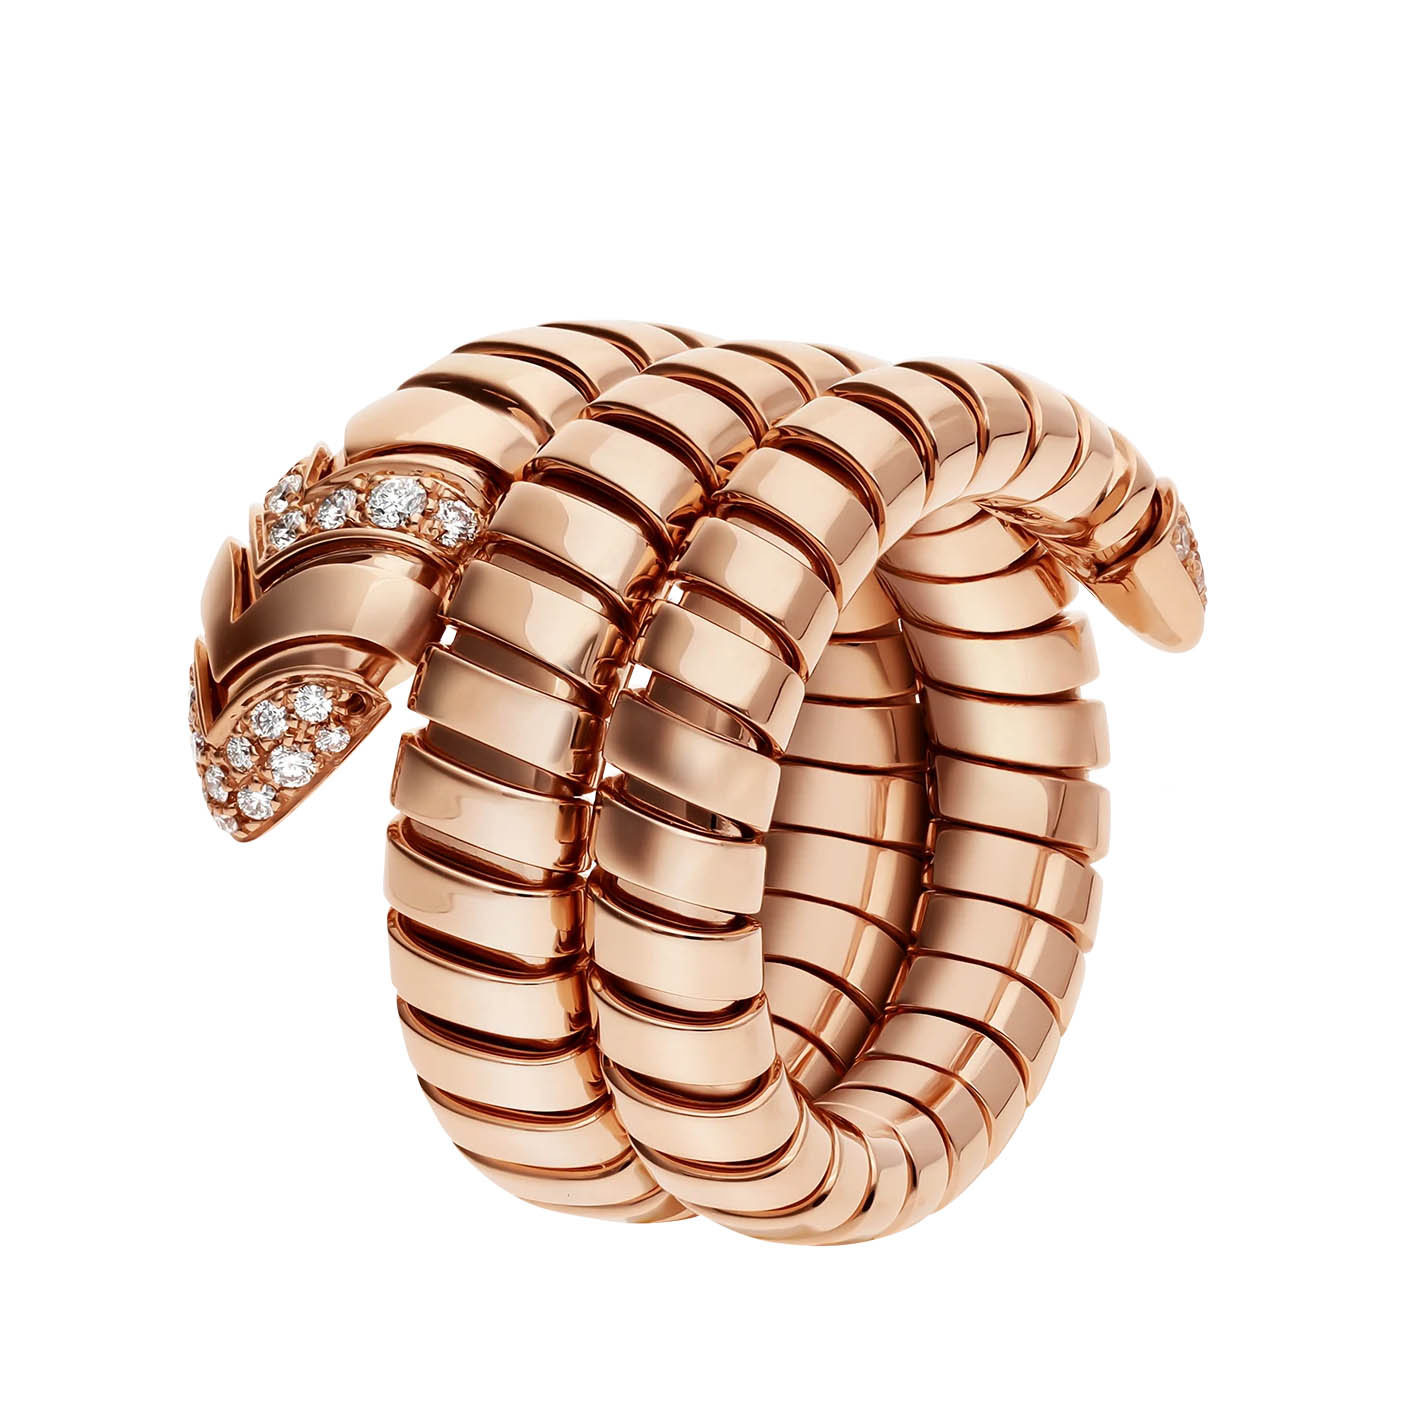 Atacado de anel espiral duplo com design personalizado joias OEM / ODM em ouro rosa 18 kt, cravejado com pavé de diamantes na cauda e na cabeça Fabricantes de joias OEM